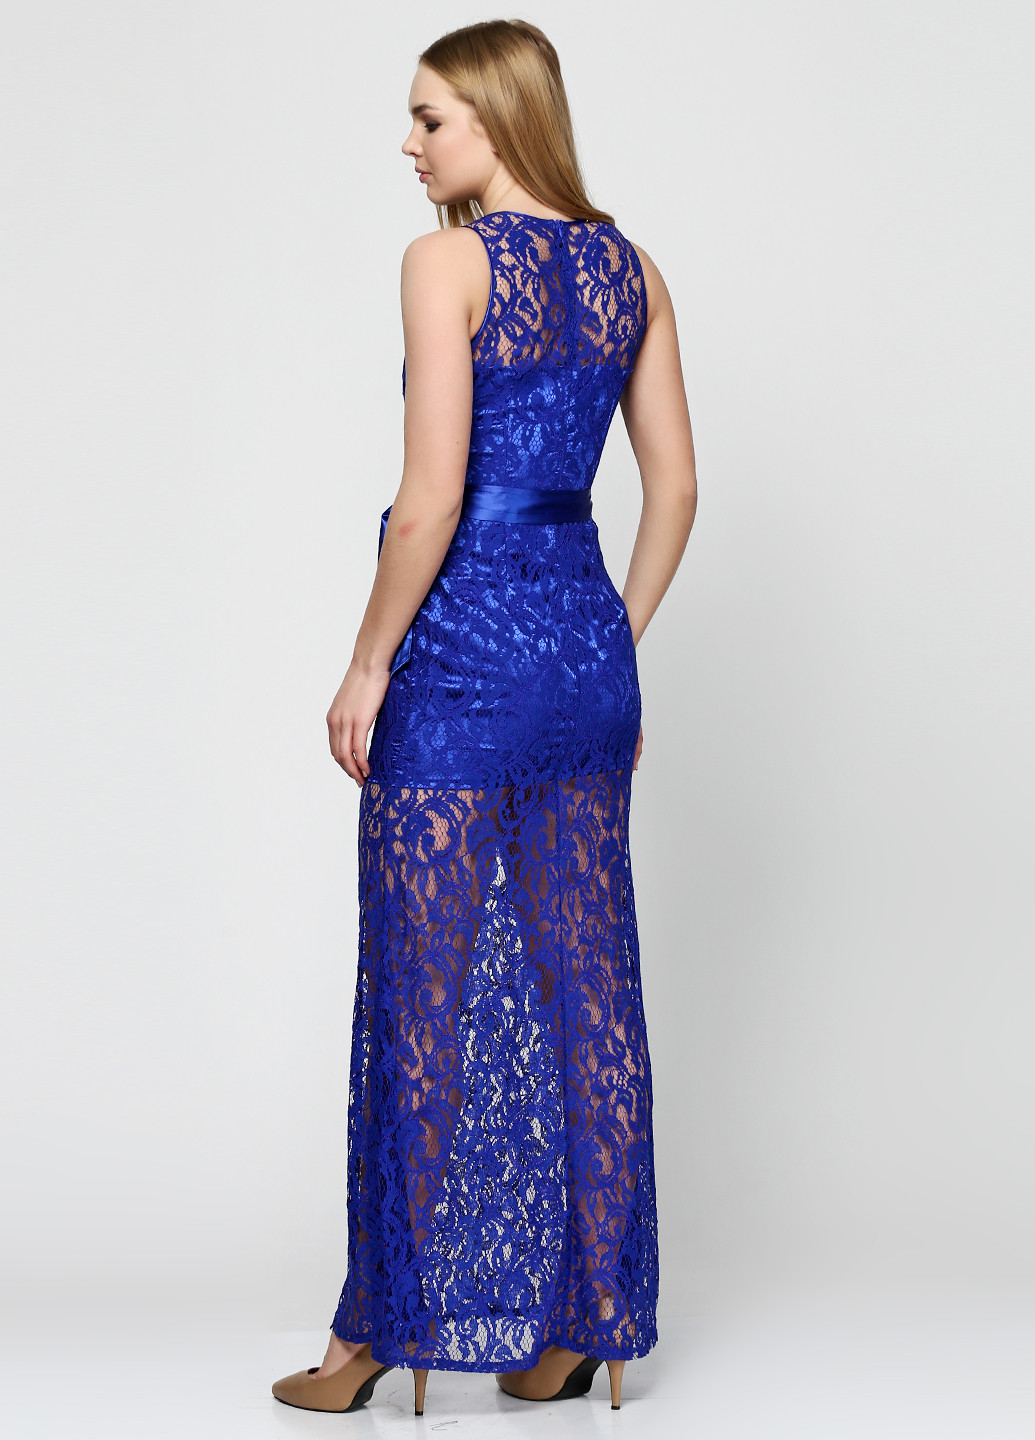 Светло-синее вечернее платье Anastasia с абстрактным узором